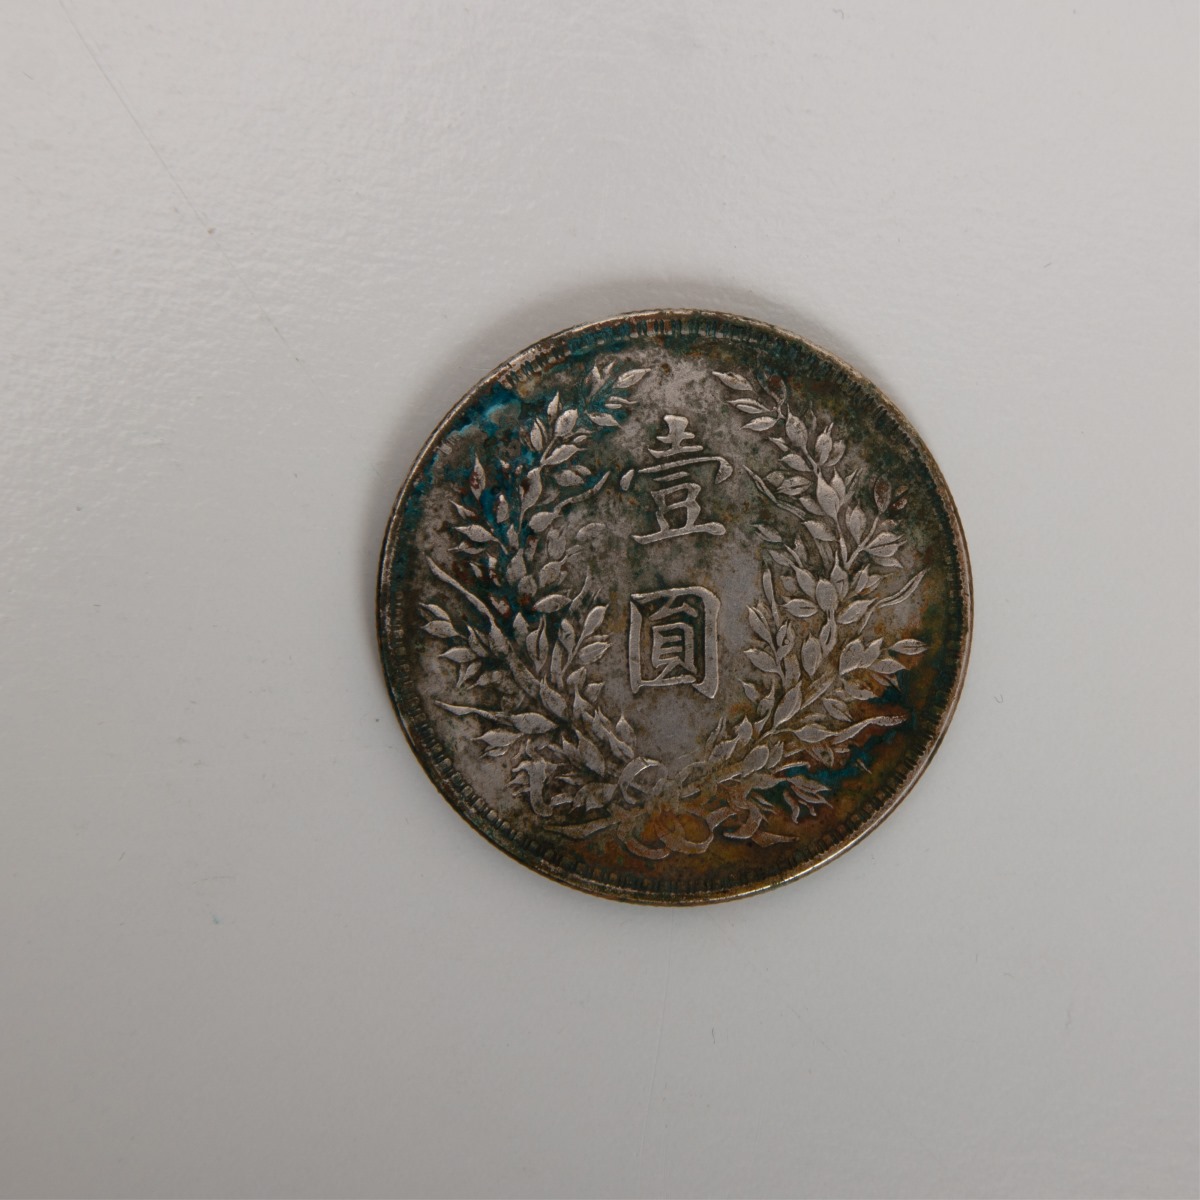 1921 China Republic 1 Dollar Coin,Yuan Shi Kai - Image 4 of 6